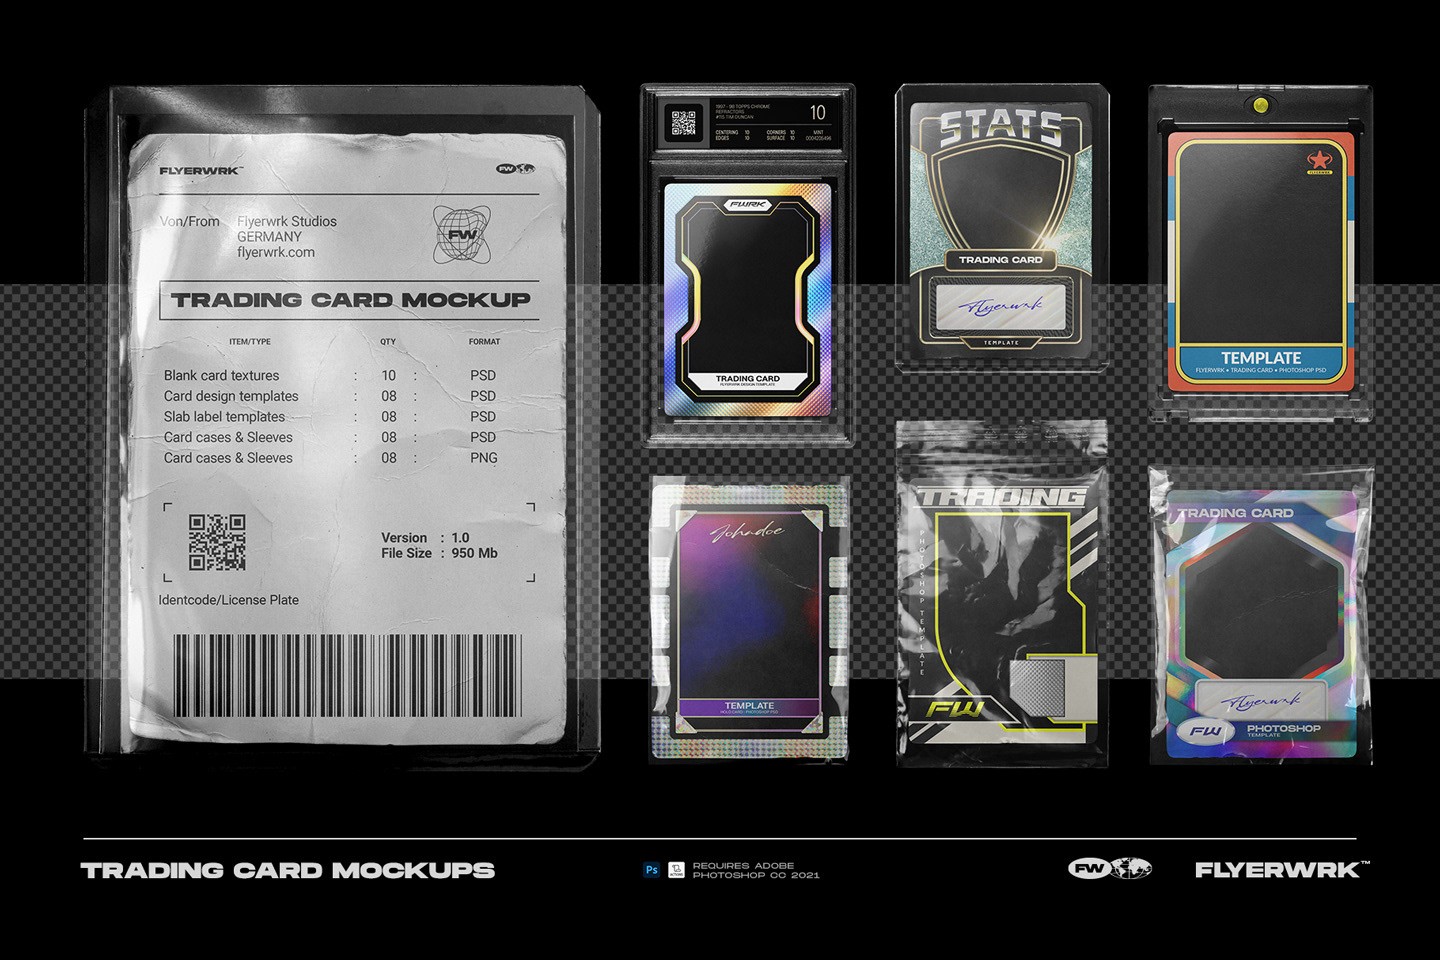 球星卡片包装设计展示样机模板PSD 样机素材 第8张